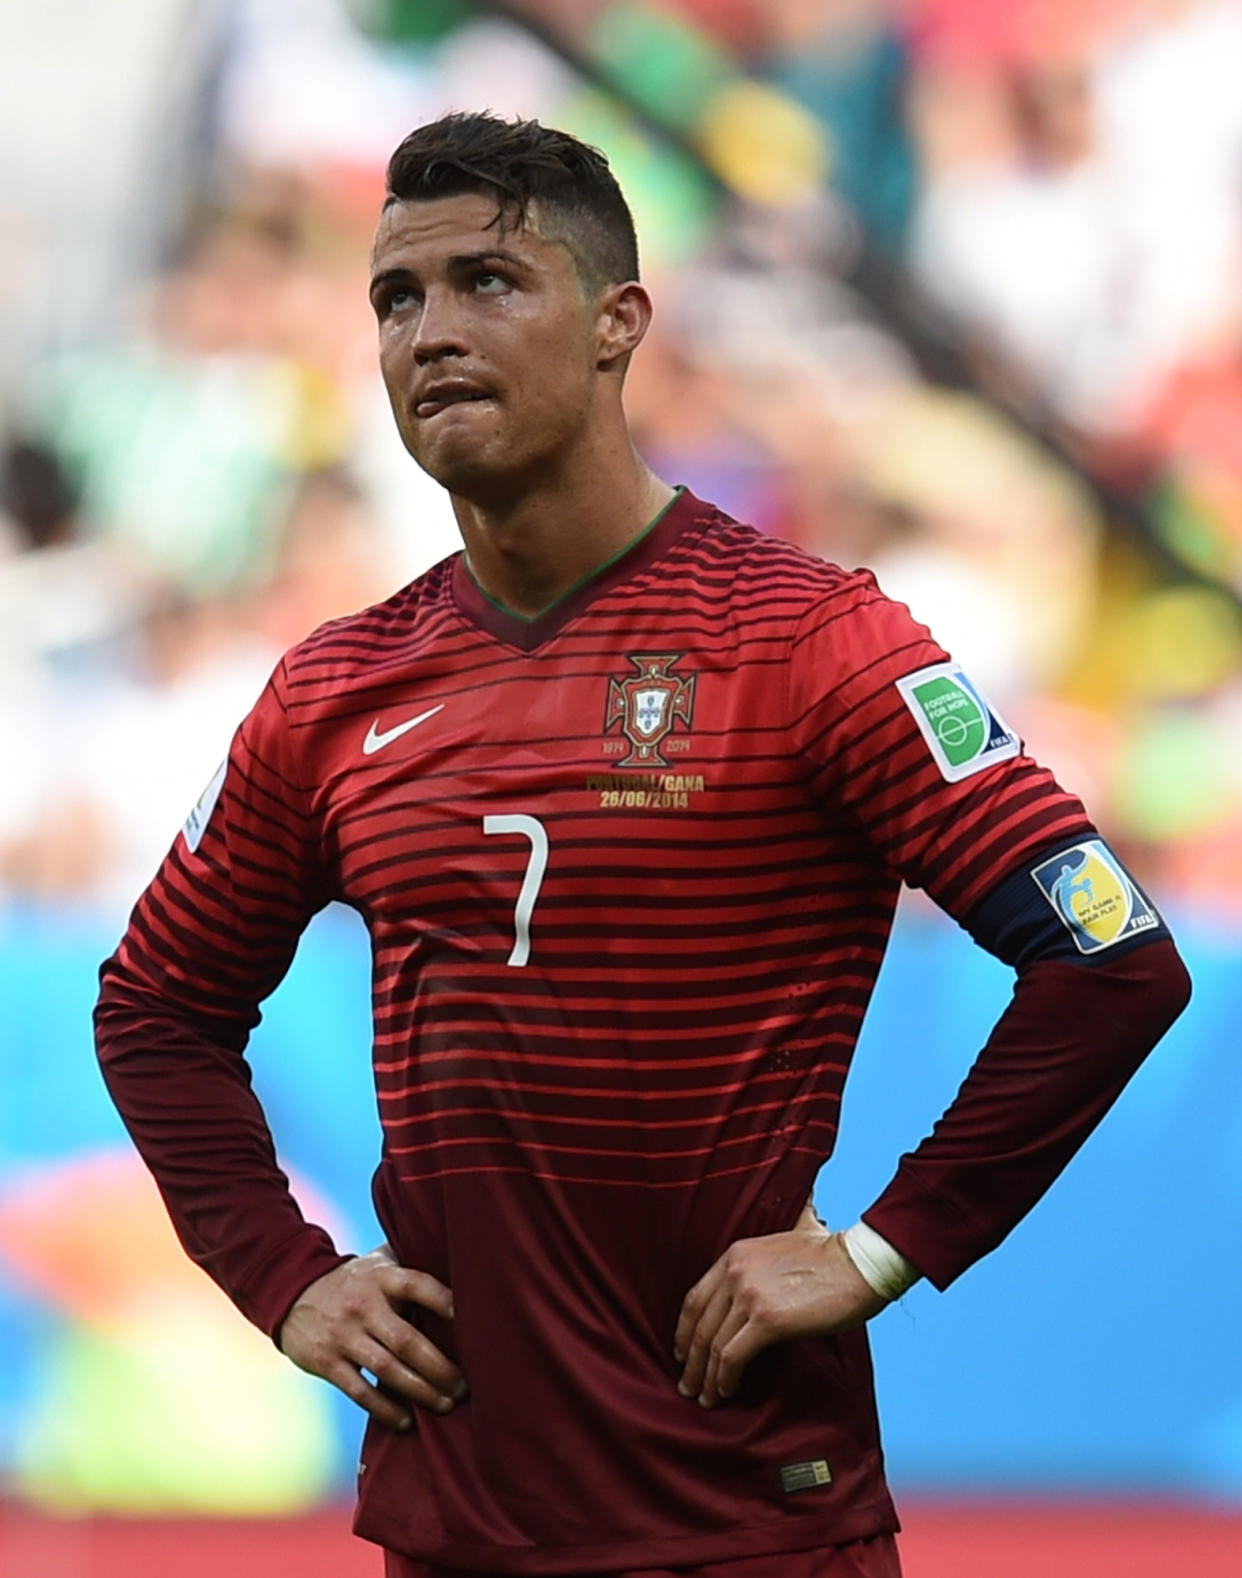 El jugador de Portugal, Cristiano Ronaldo, en un partido contra Ghana en el Mundial el jueves, 26 de junio de 2014, en Brasilia. (AP Photo/Paulo Duarte)